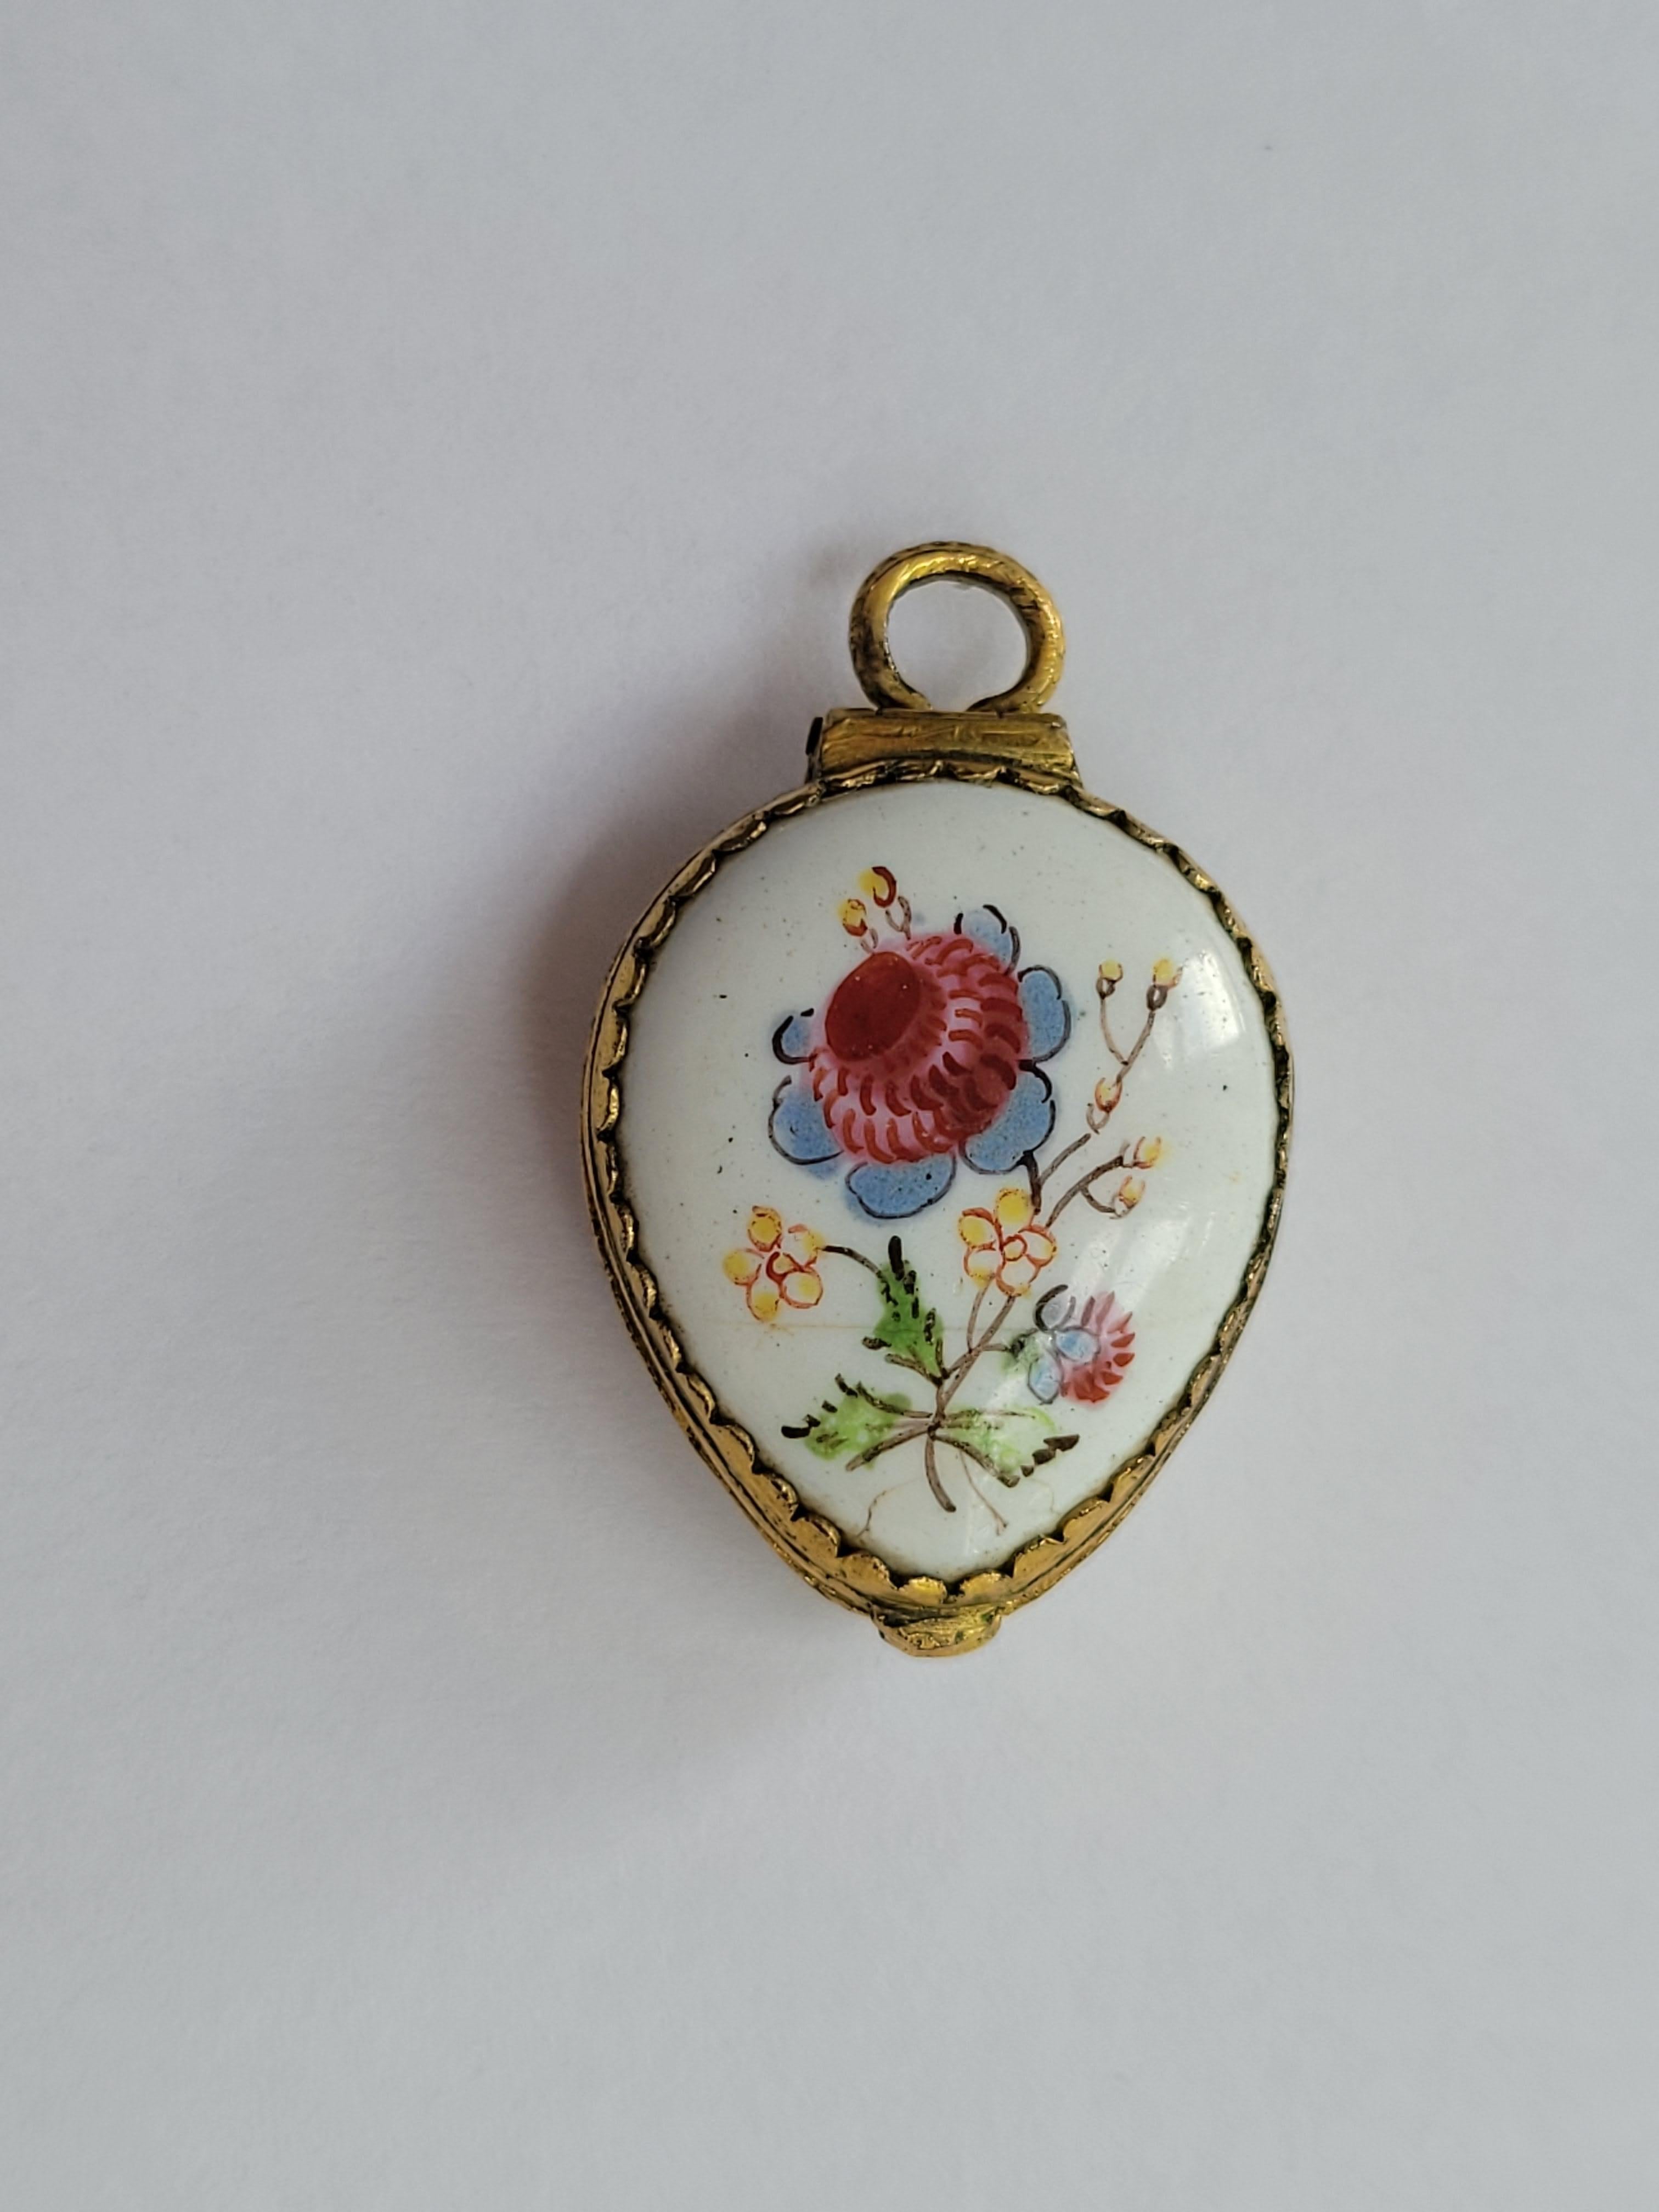 Ce ravissant médaillon géorgien en émail peint à la main, datant de C.I.Cattersea vers 1800, est une pièce de collection rare et captivante aux profondes racines anglaises. Confectionné en forme de cœur, orné de motifs floraux traditionnels, il